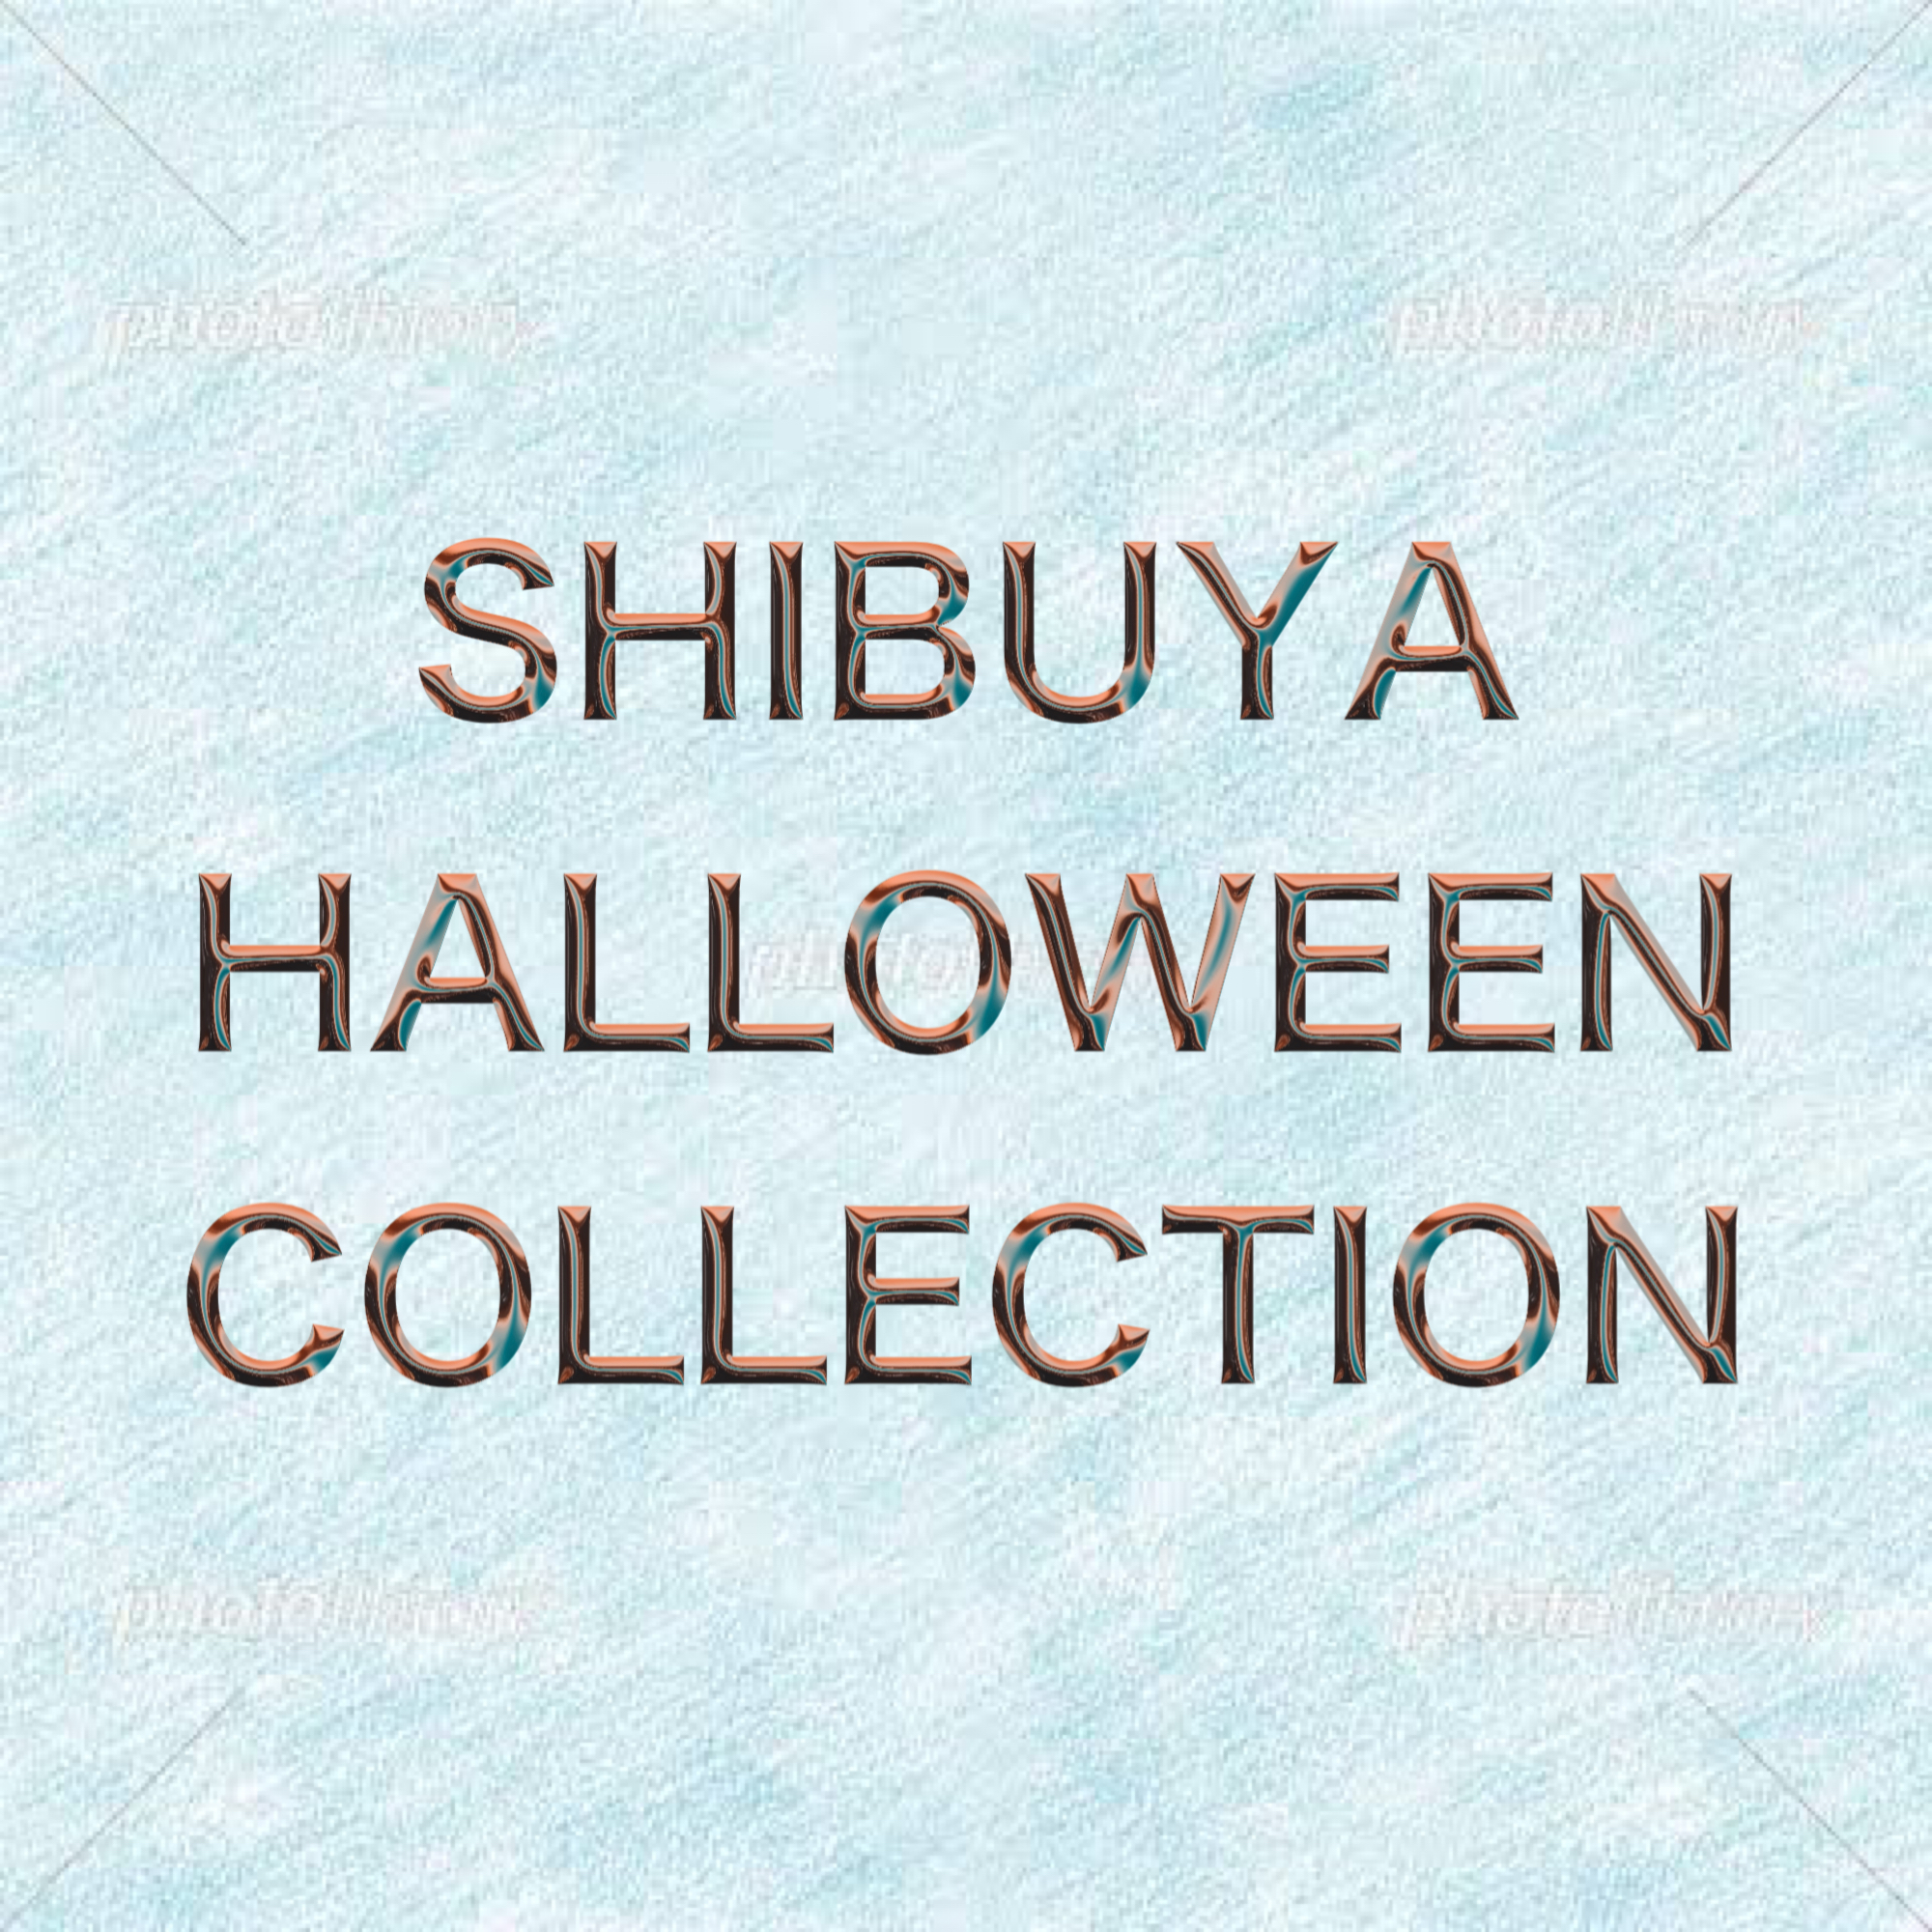 【出演情報】「SHIBUYA HALLOWEEN COLLCTION」に千瀬 梓月が出演します！